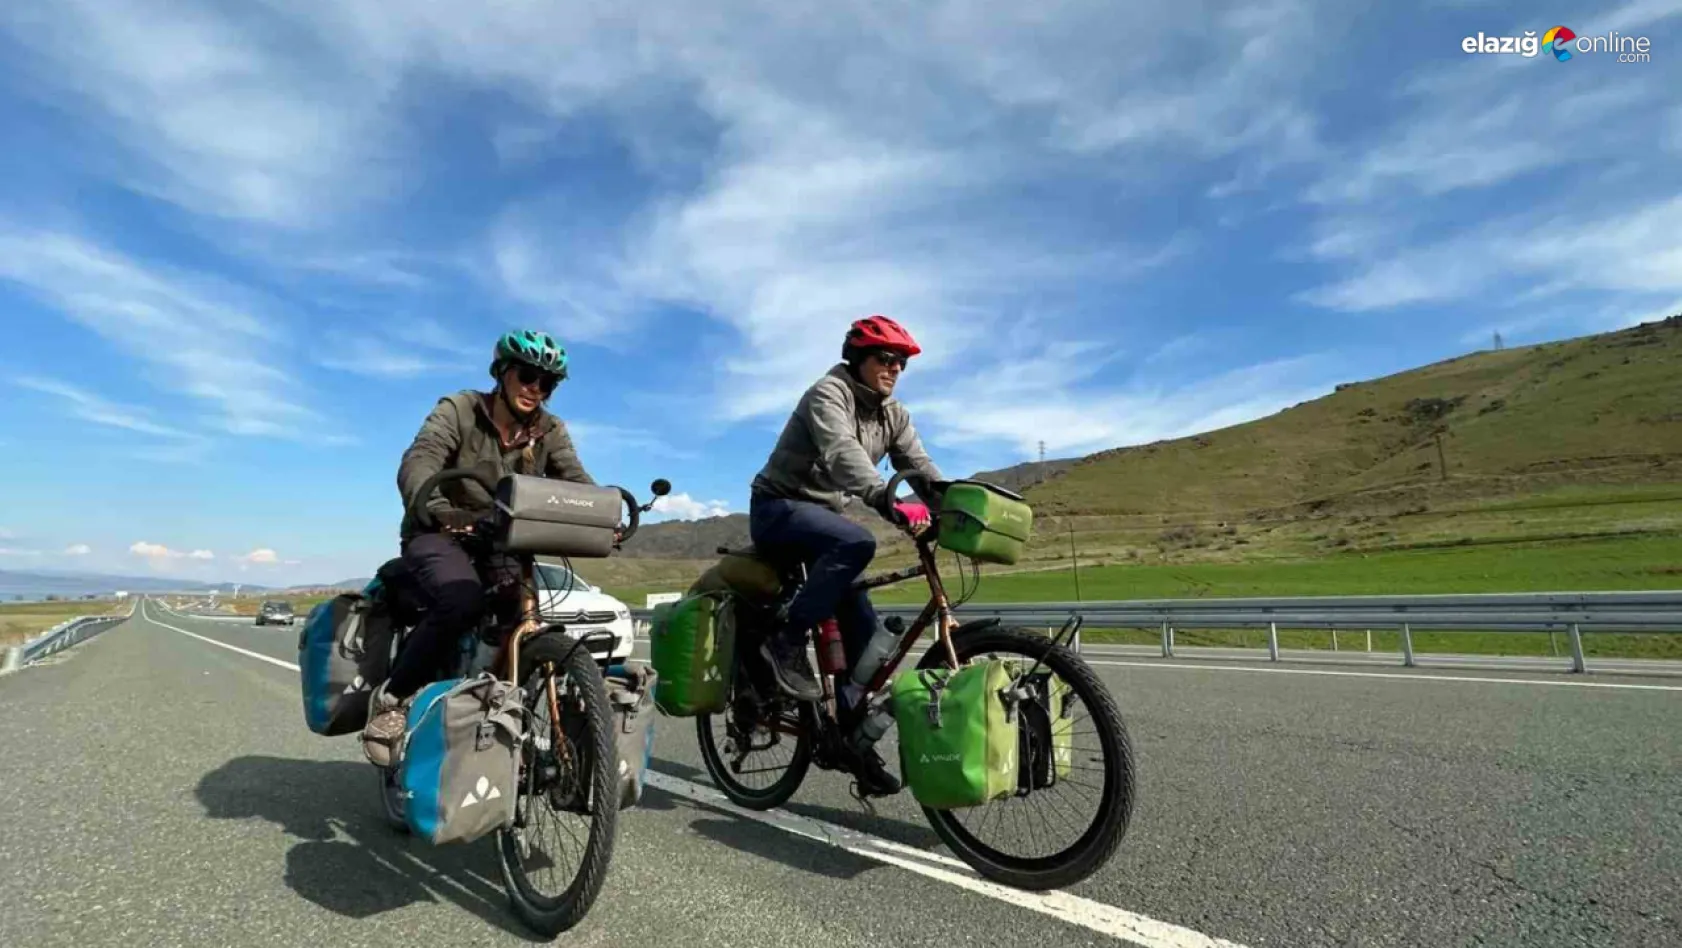 Bisikletle dünya turu yapan Fransız çiftten övgü dolu sözler